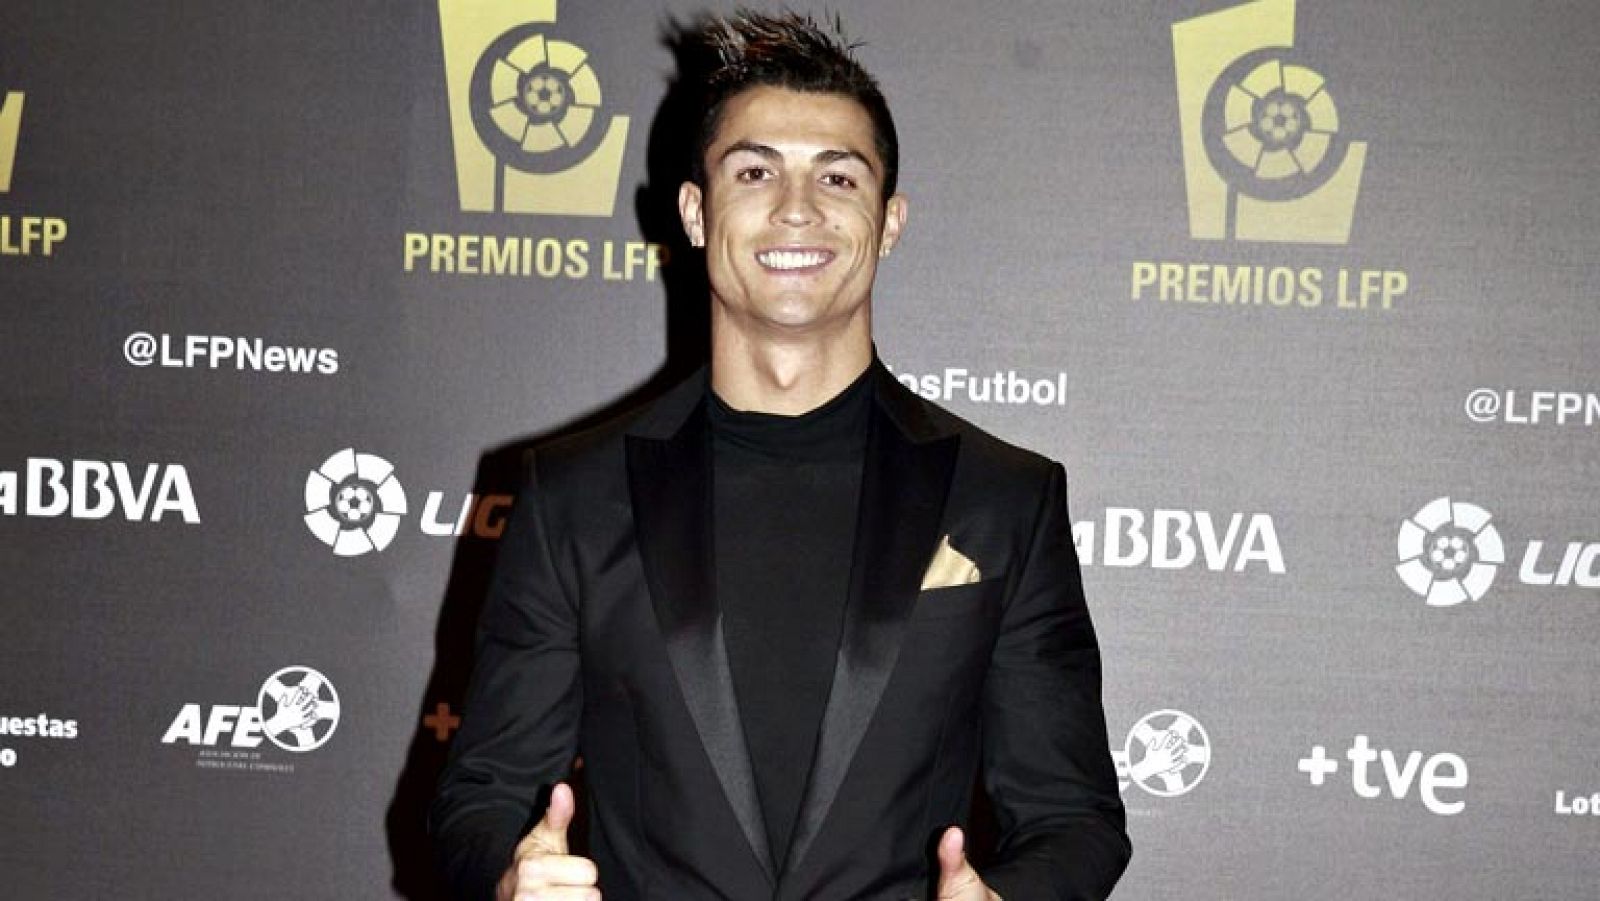 El delantero del Real Madrid Cristiano Ronaldo ha sido premiado como mejor jugador de la temporada 2012- 2013, durante la Gala de la Liga de Fútbol Profesional (LFP). El portugués recibió el 'Premio Especial LFP' como 'Jugador Mas Valioso'. El gran a